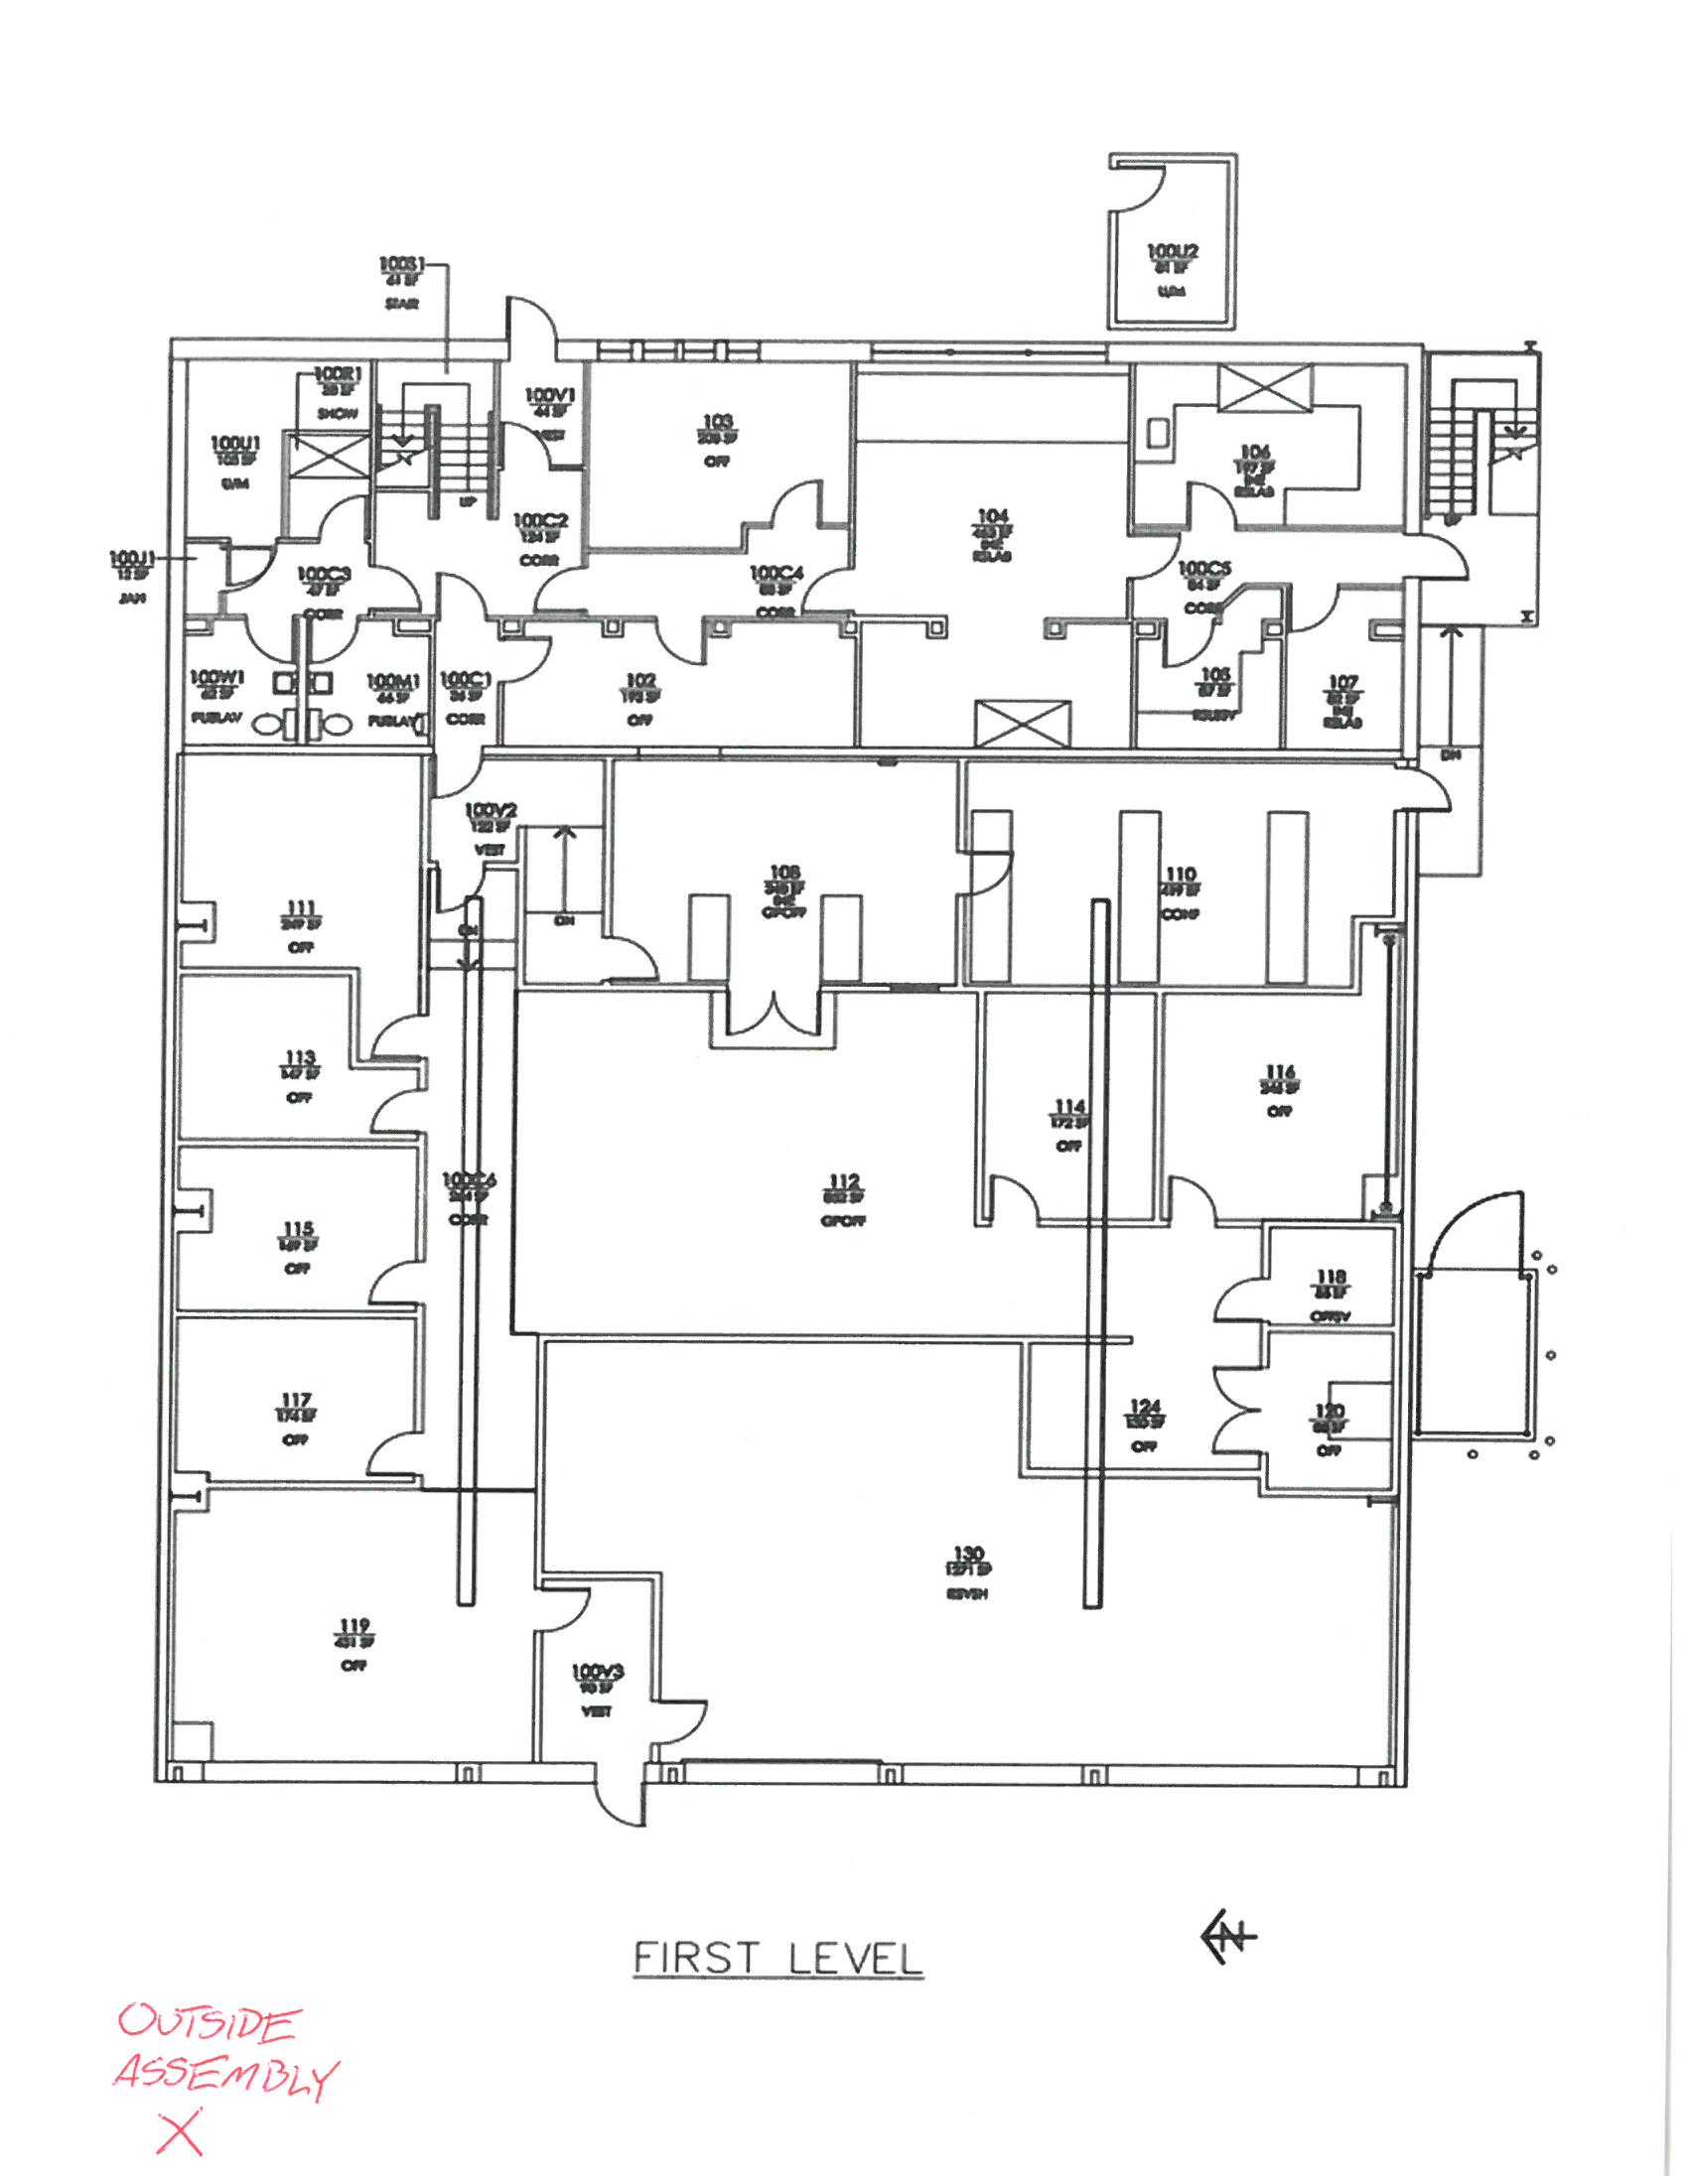 EHSRM building floor plan image